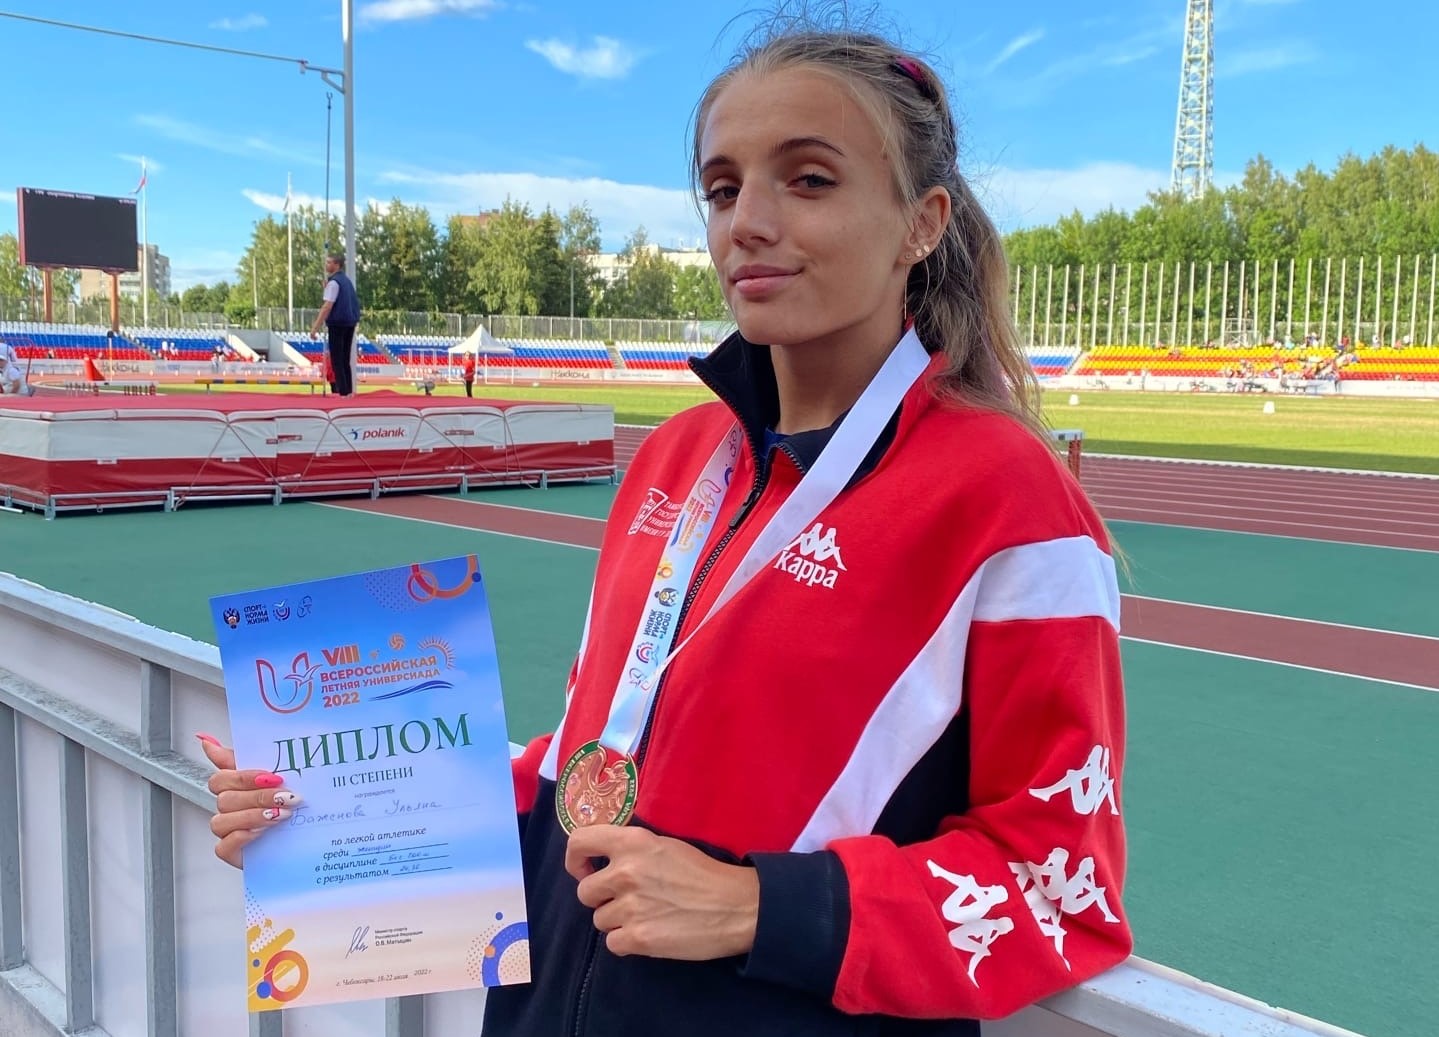 Студентка Державинского Ульяна Баженова стала призером VIII летней Универсиады фото анонса